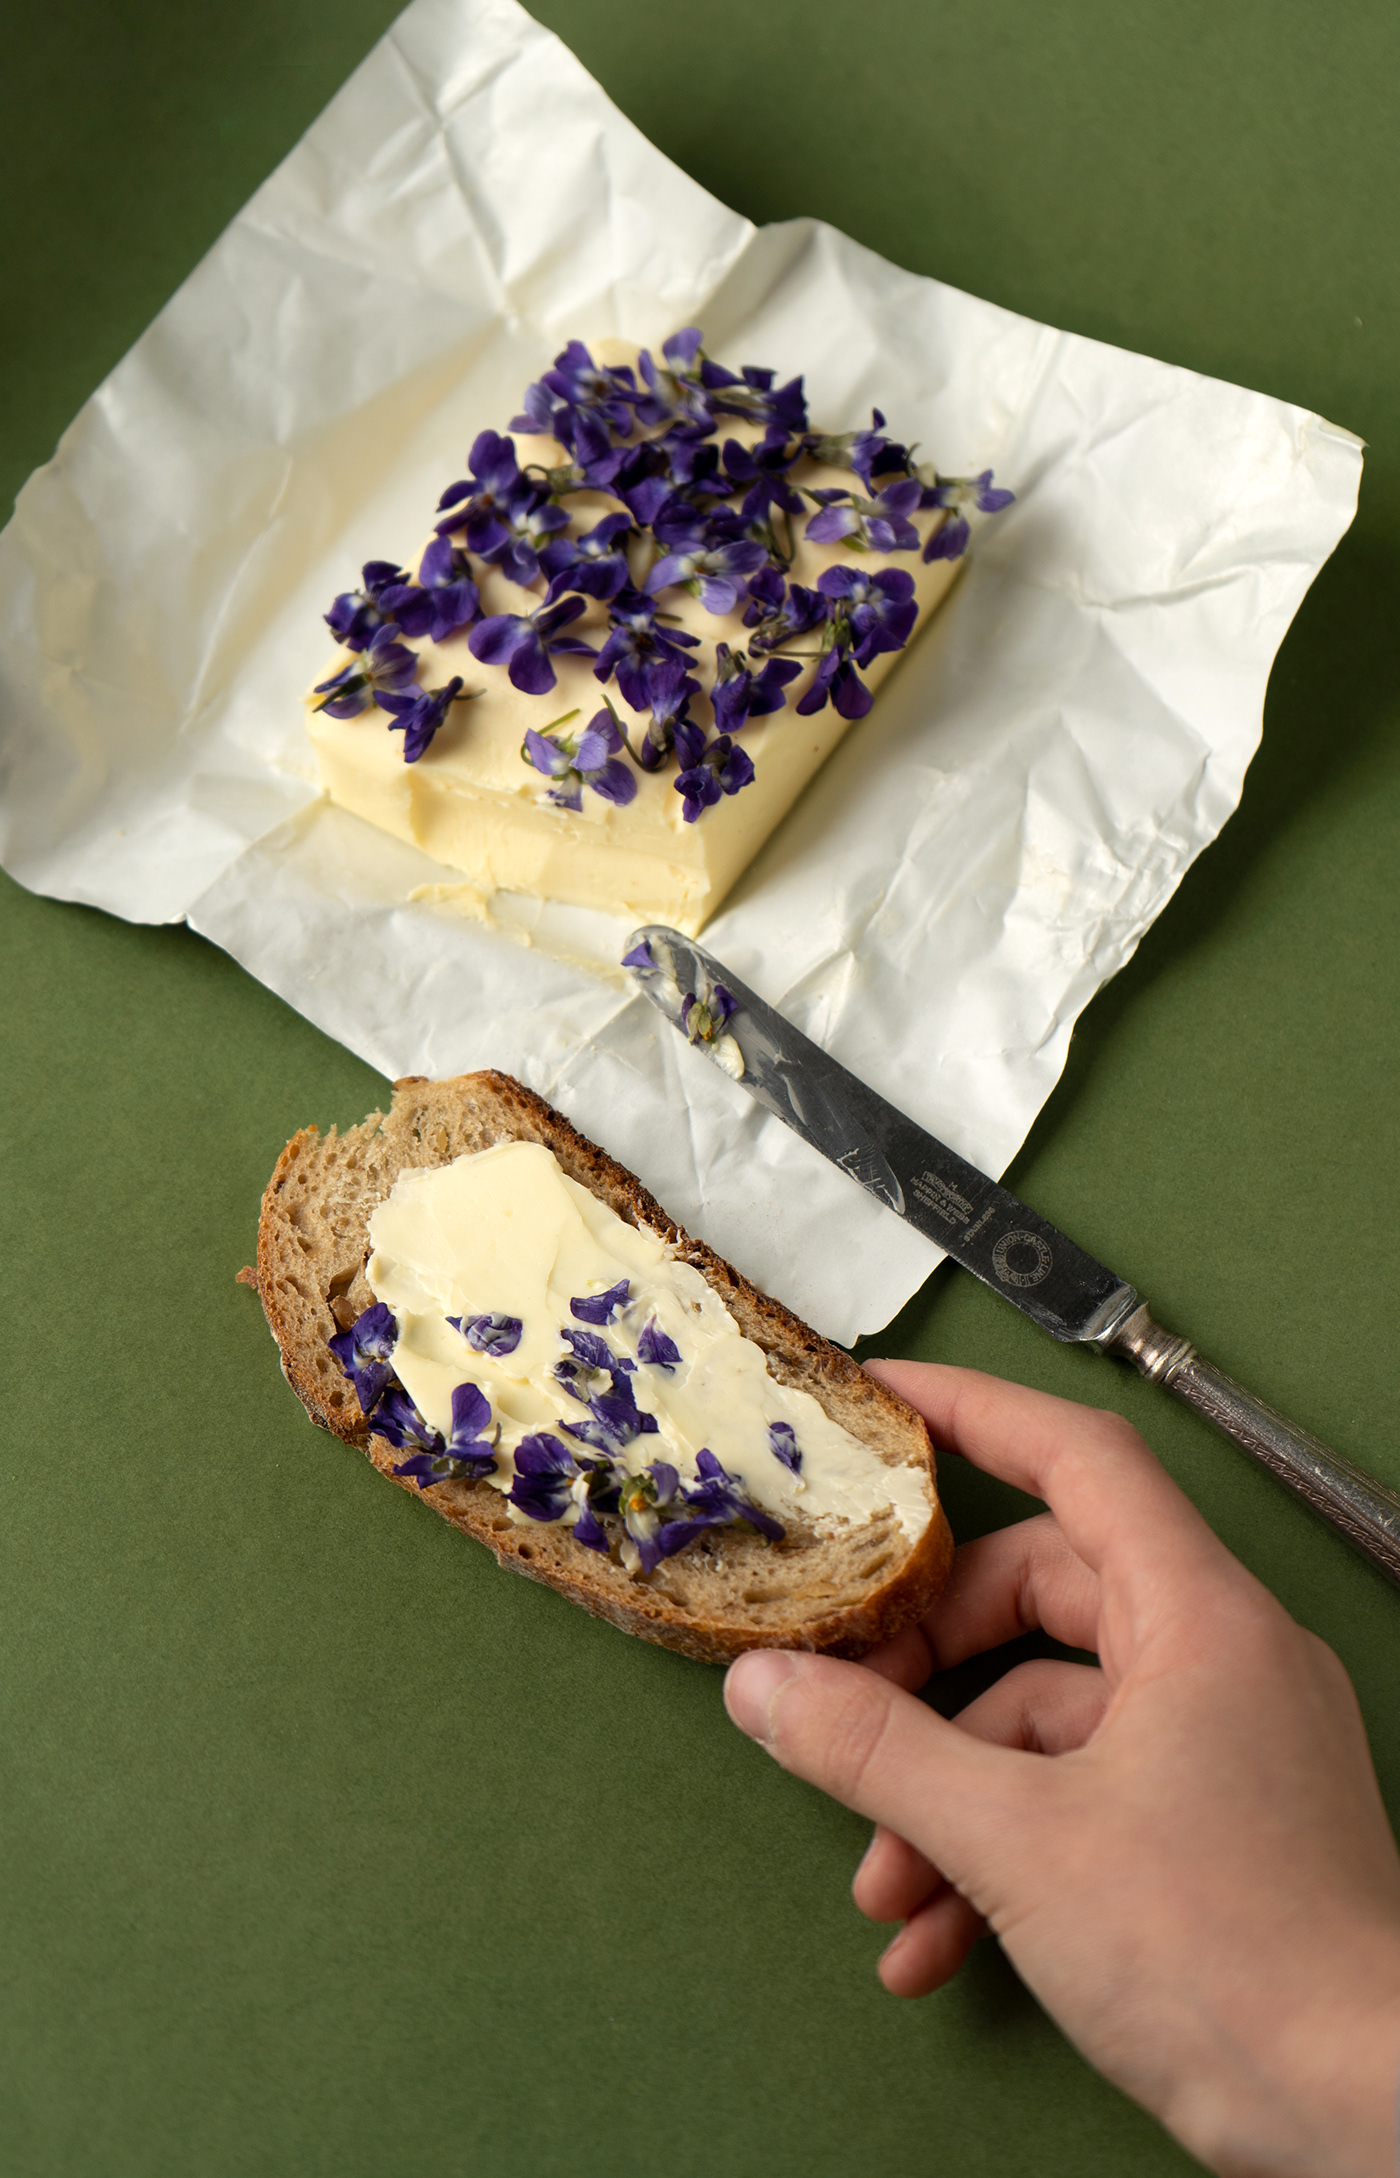 butter Flowers knife bread bites stillifephotography foodphotography photographer photoshoot violets